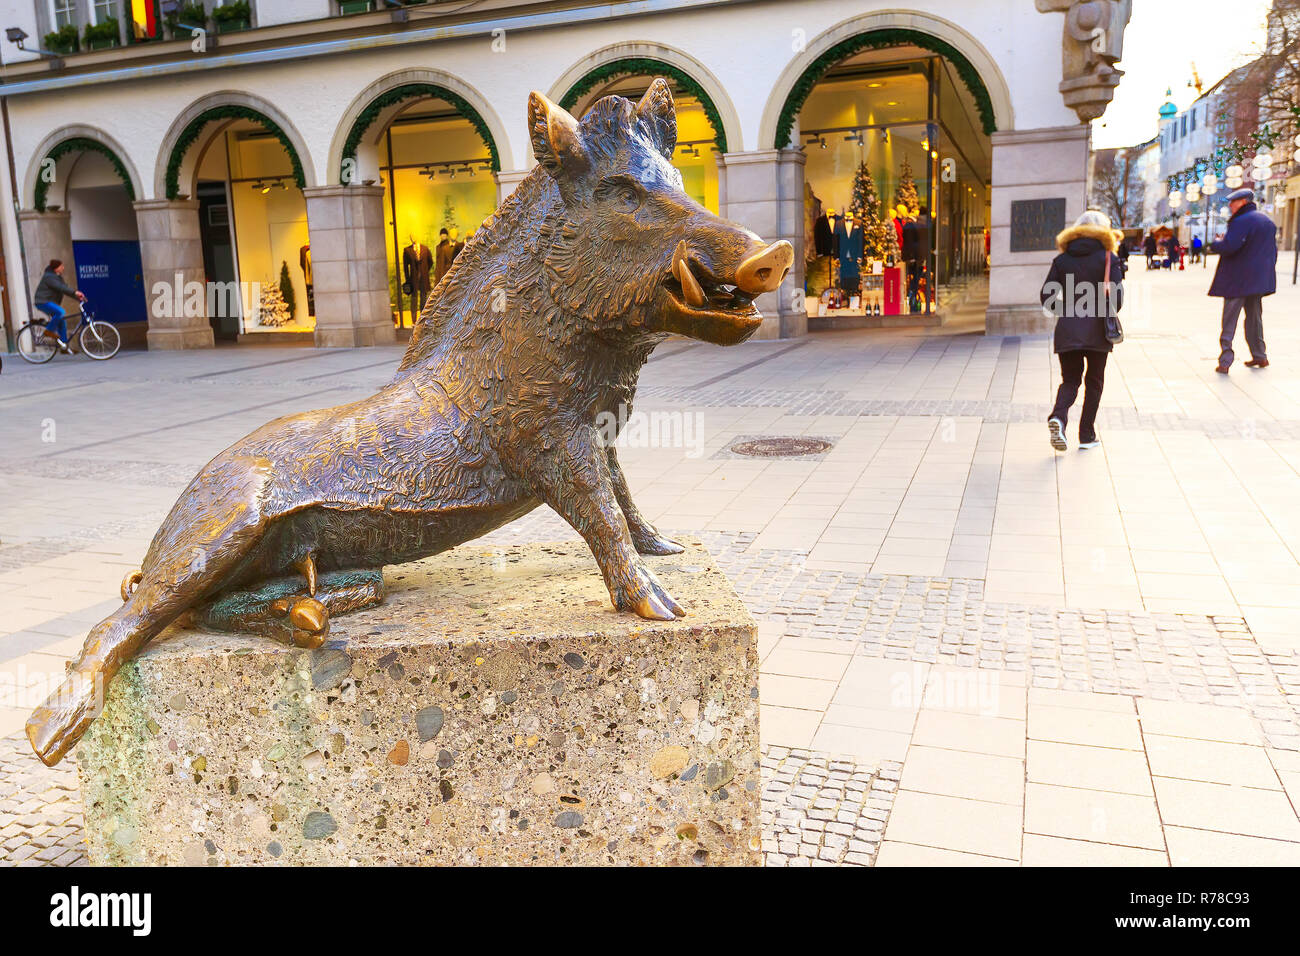 München, Deutschland - Dezember 26, 2016: Statue von einem Wildschwein an der Tür des Museum für Jagd und Fischerei Stockfoto